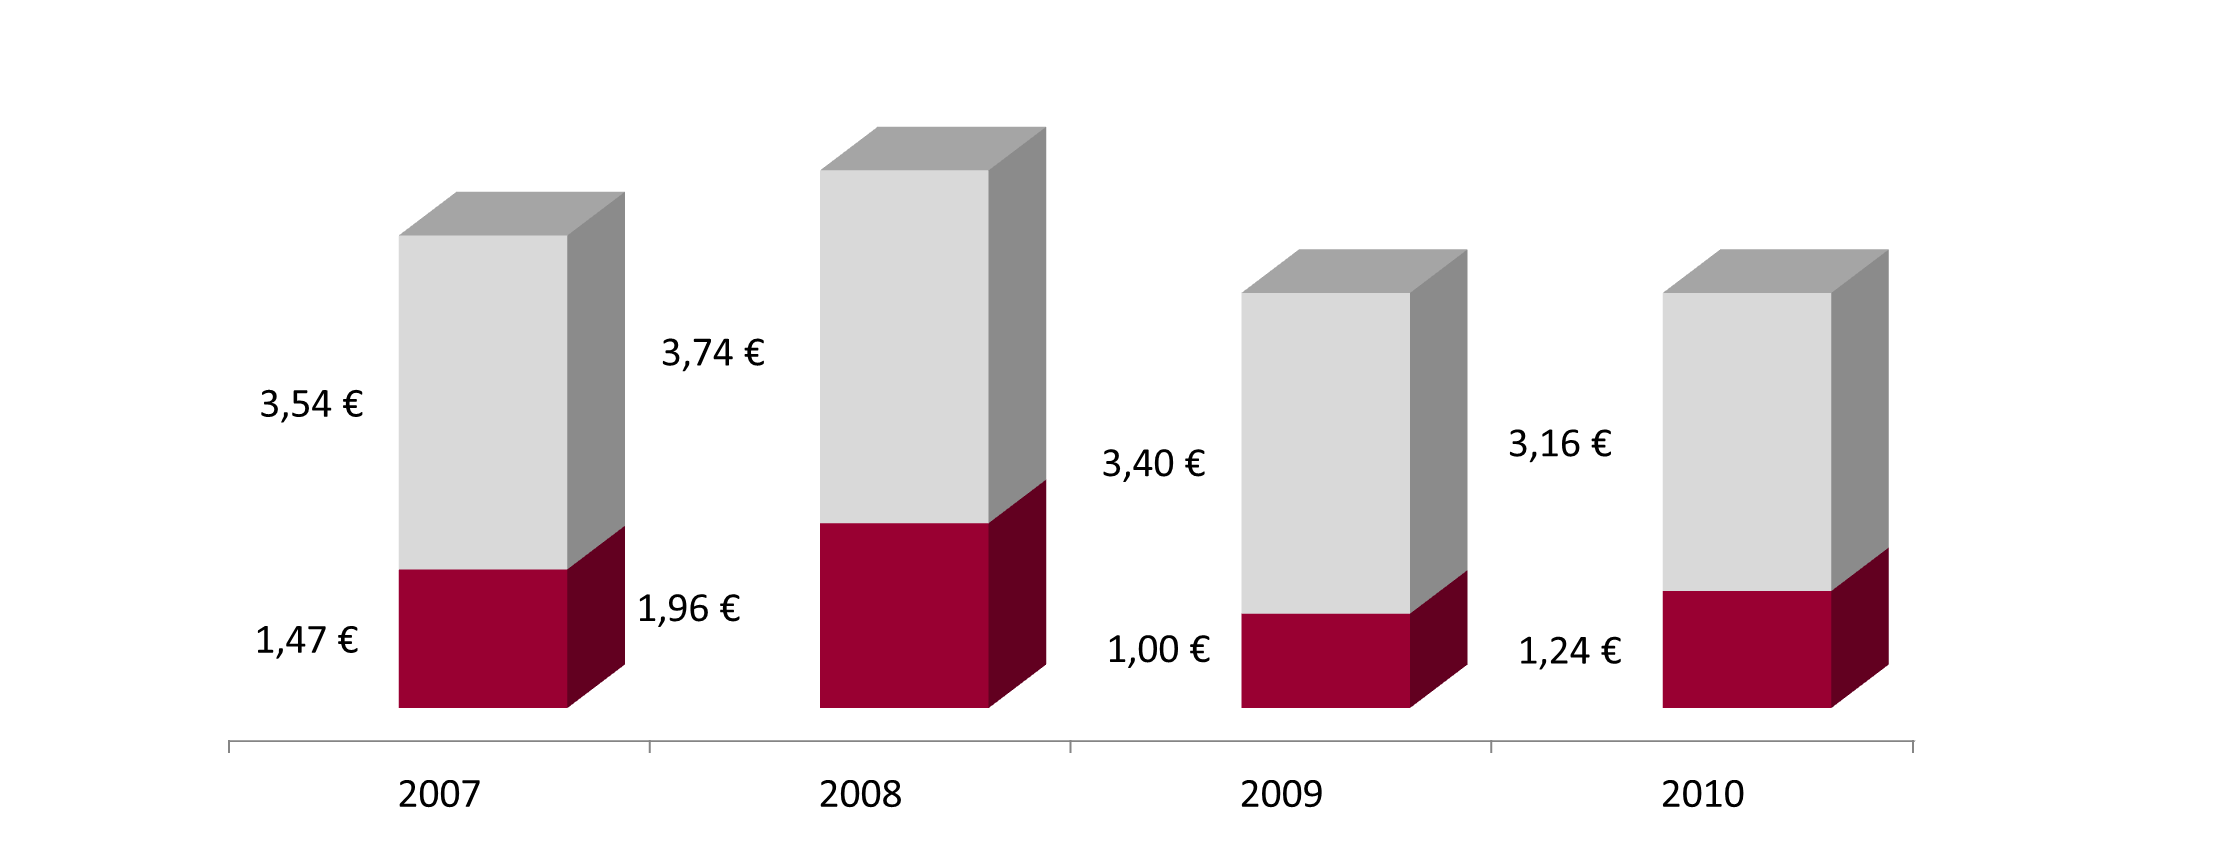 Dividende : une politique de distribution soutenue STRATÉGIE 2011 Conjugué à une croissance du cours de bourse de + 8,1 % à fin 2010, la